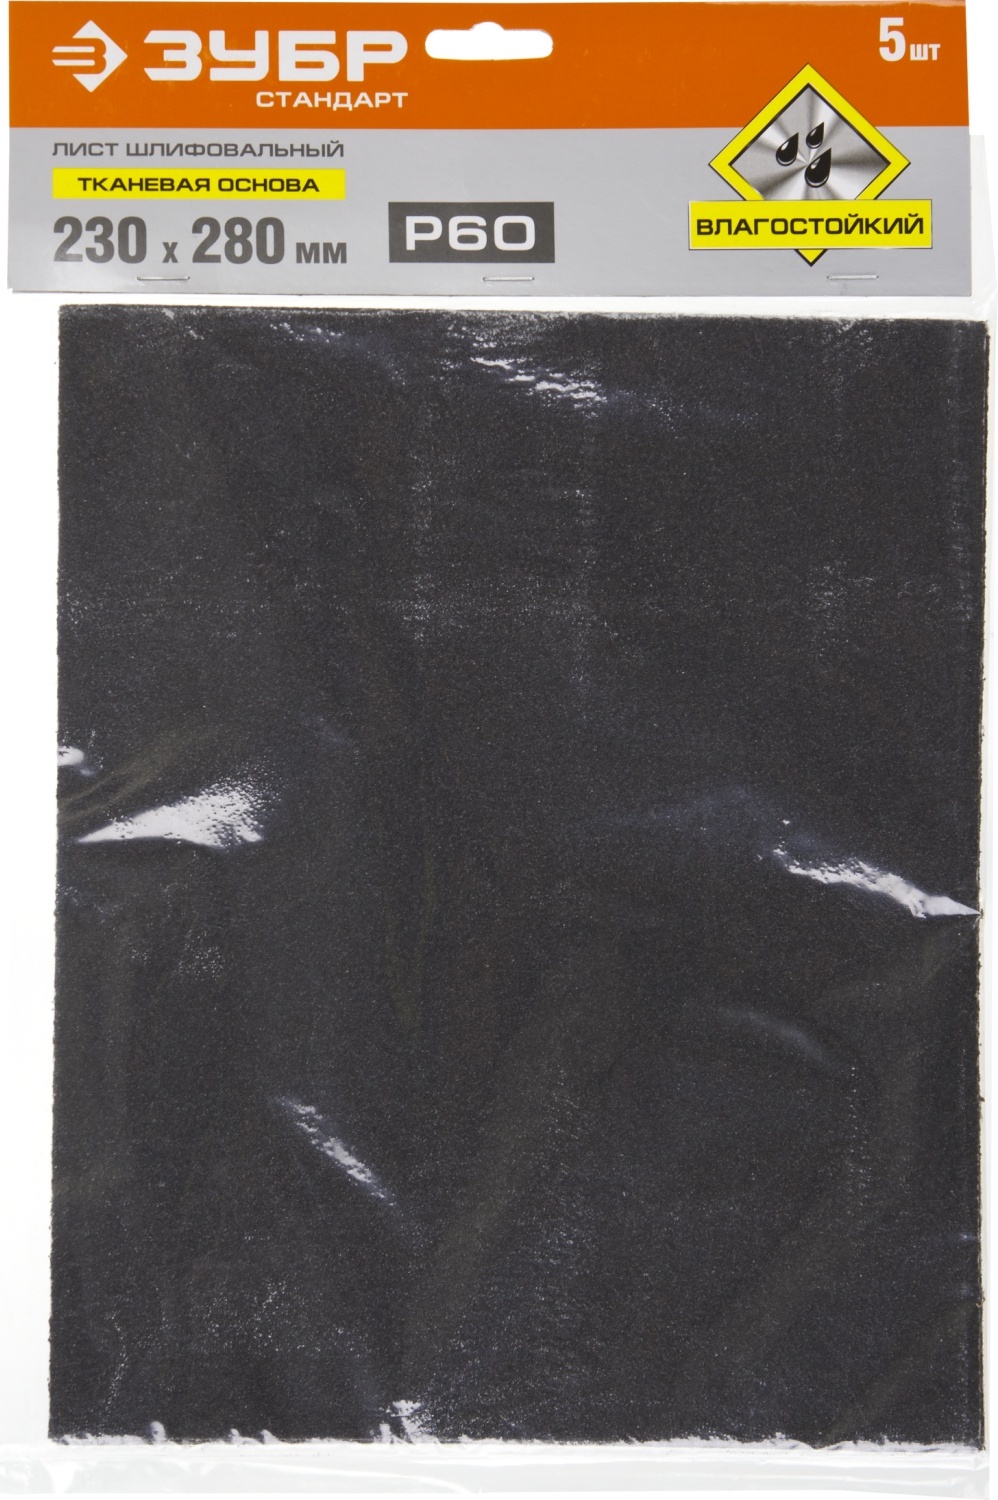 Лист шлифовальный водостойкий 230х280 мм Р-60 ЗУБР Стандарт 35415-060, тканевая основа, 5 шт - фото